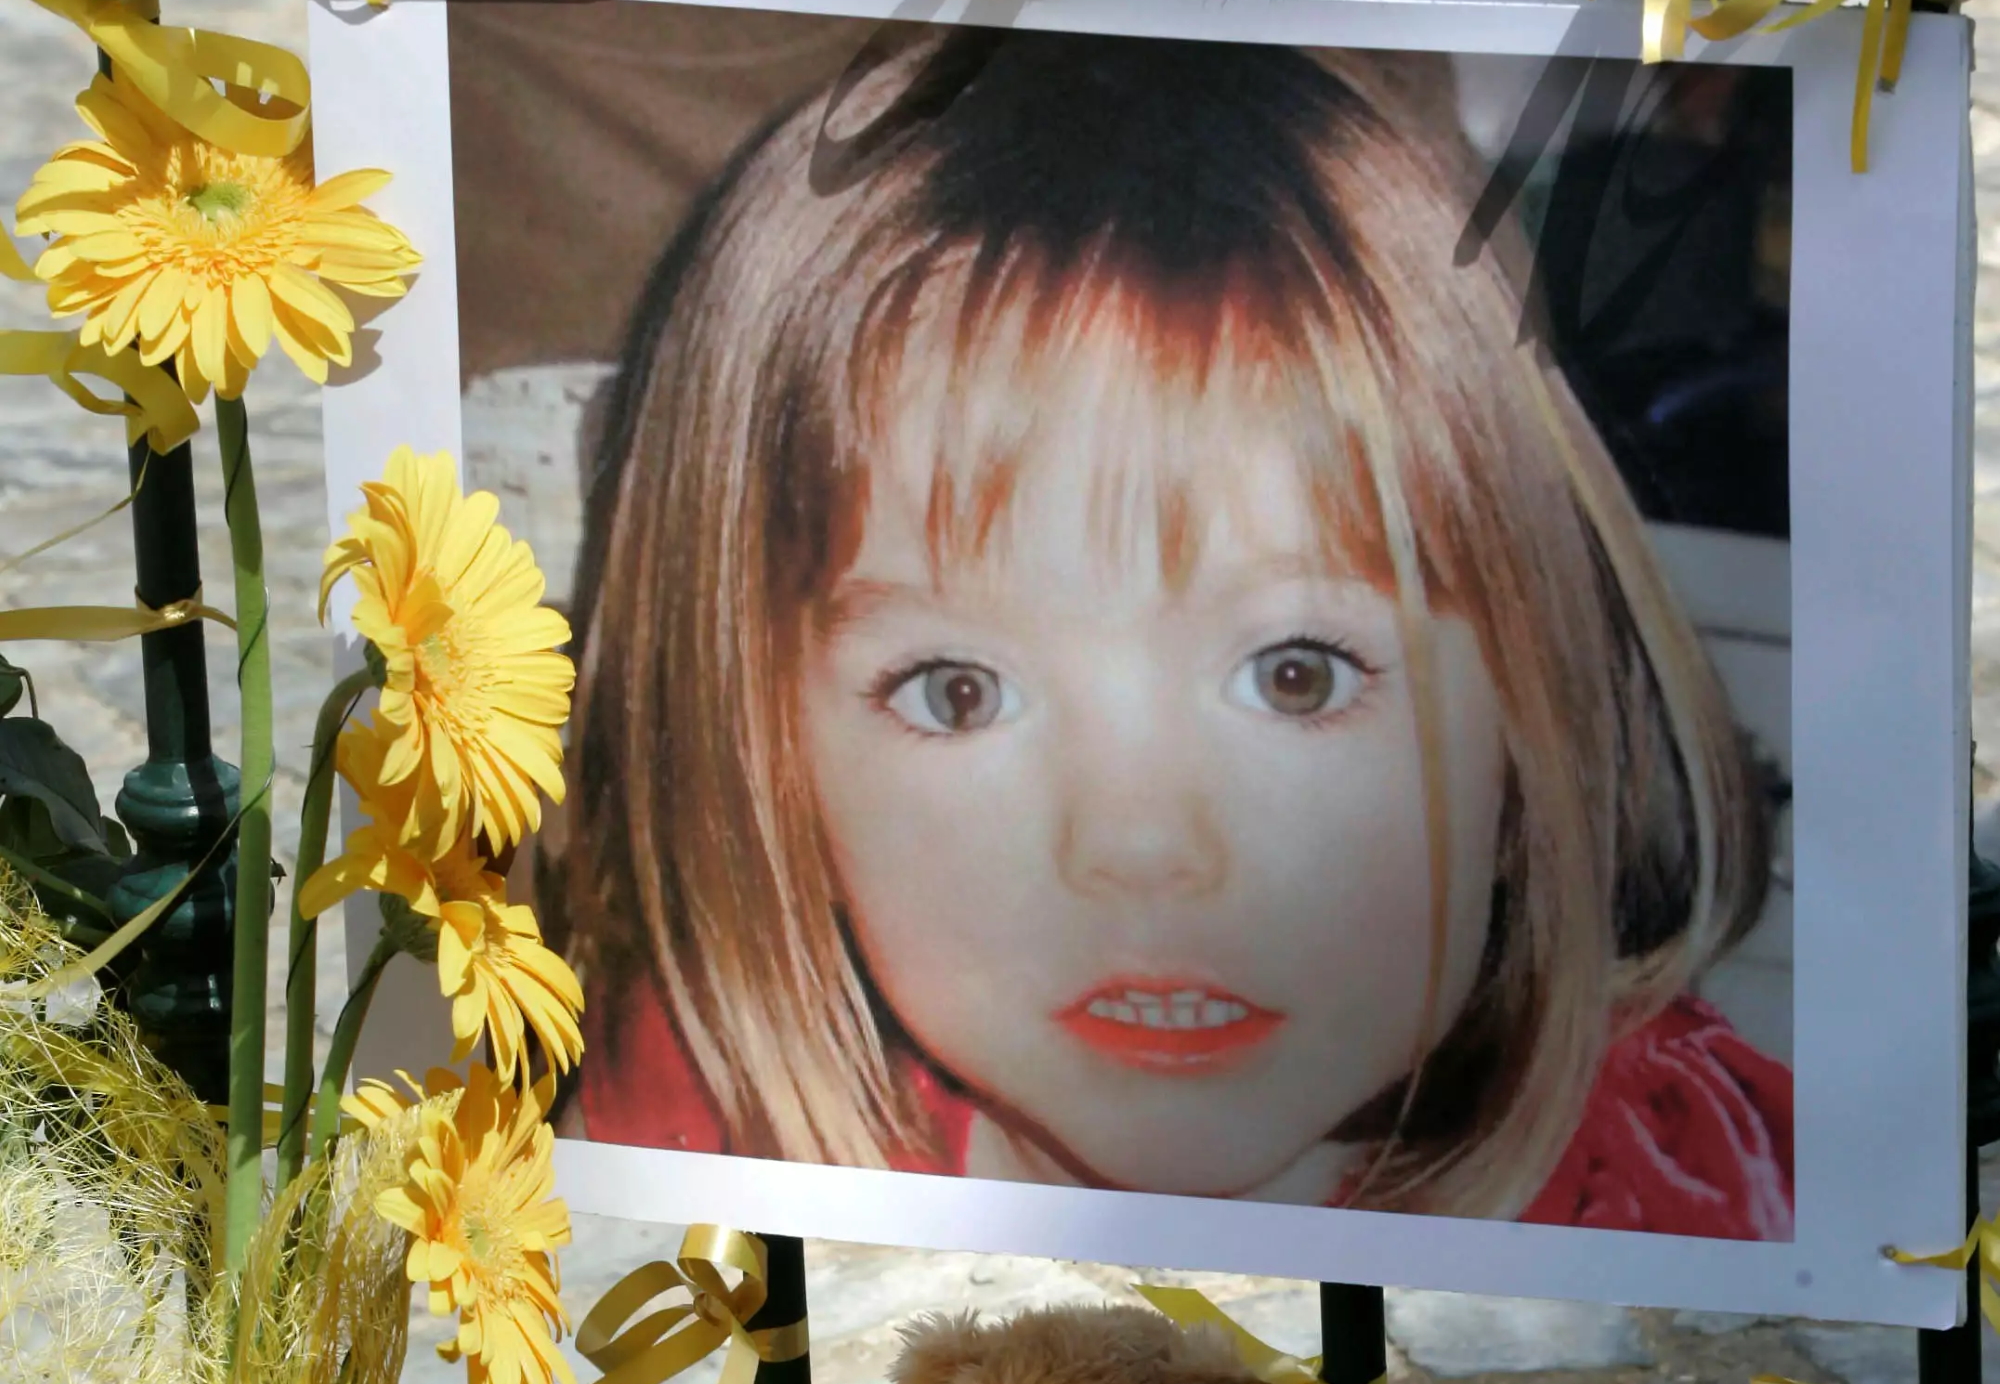 Μαντλίν ΜακΚάν: «Απογοητευμένη» δηλώνει η οικογένεια της 22χρονης από την Πολωνία που ισχυρίζεται ότι είναι η αγνοούμενη